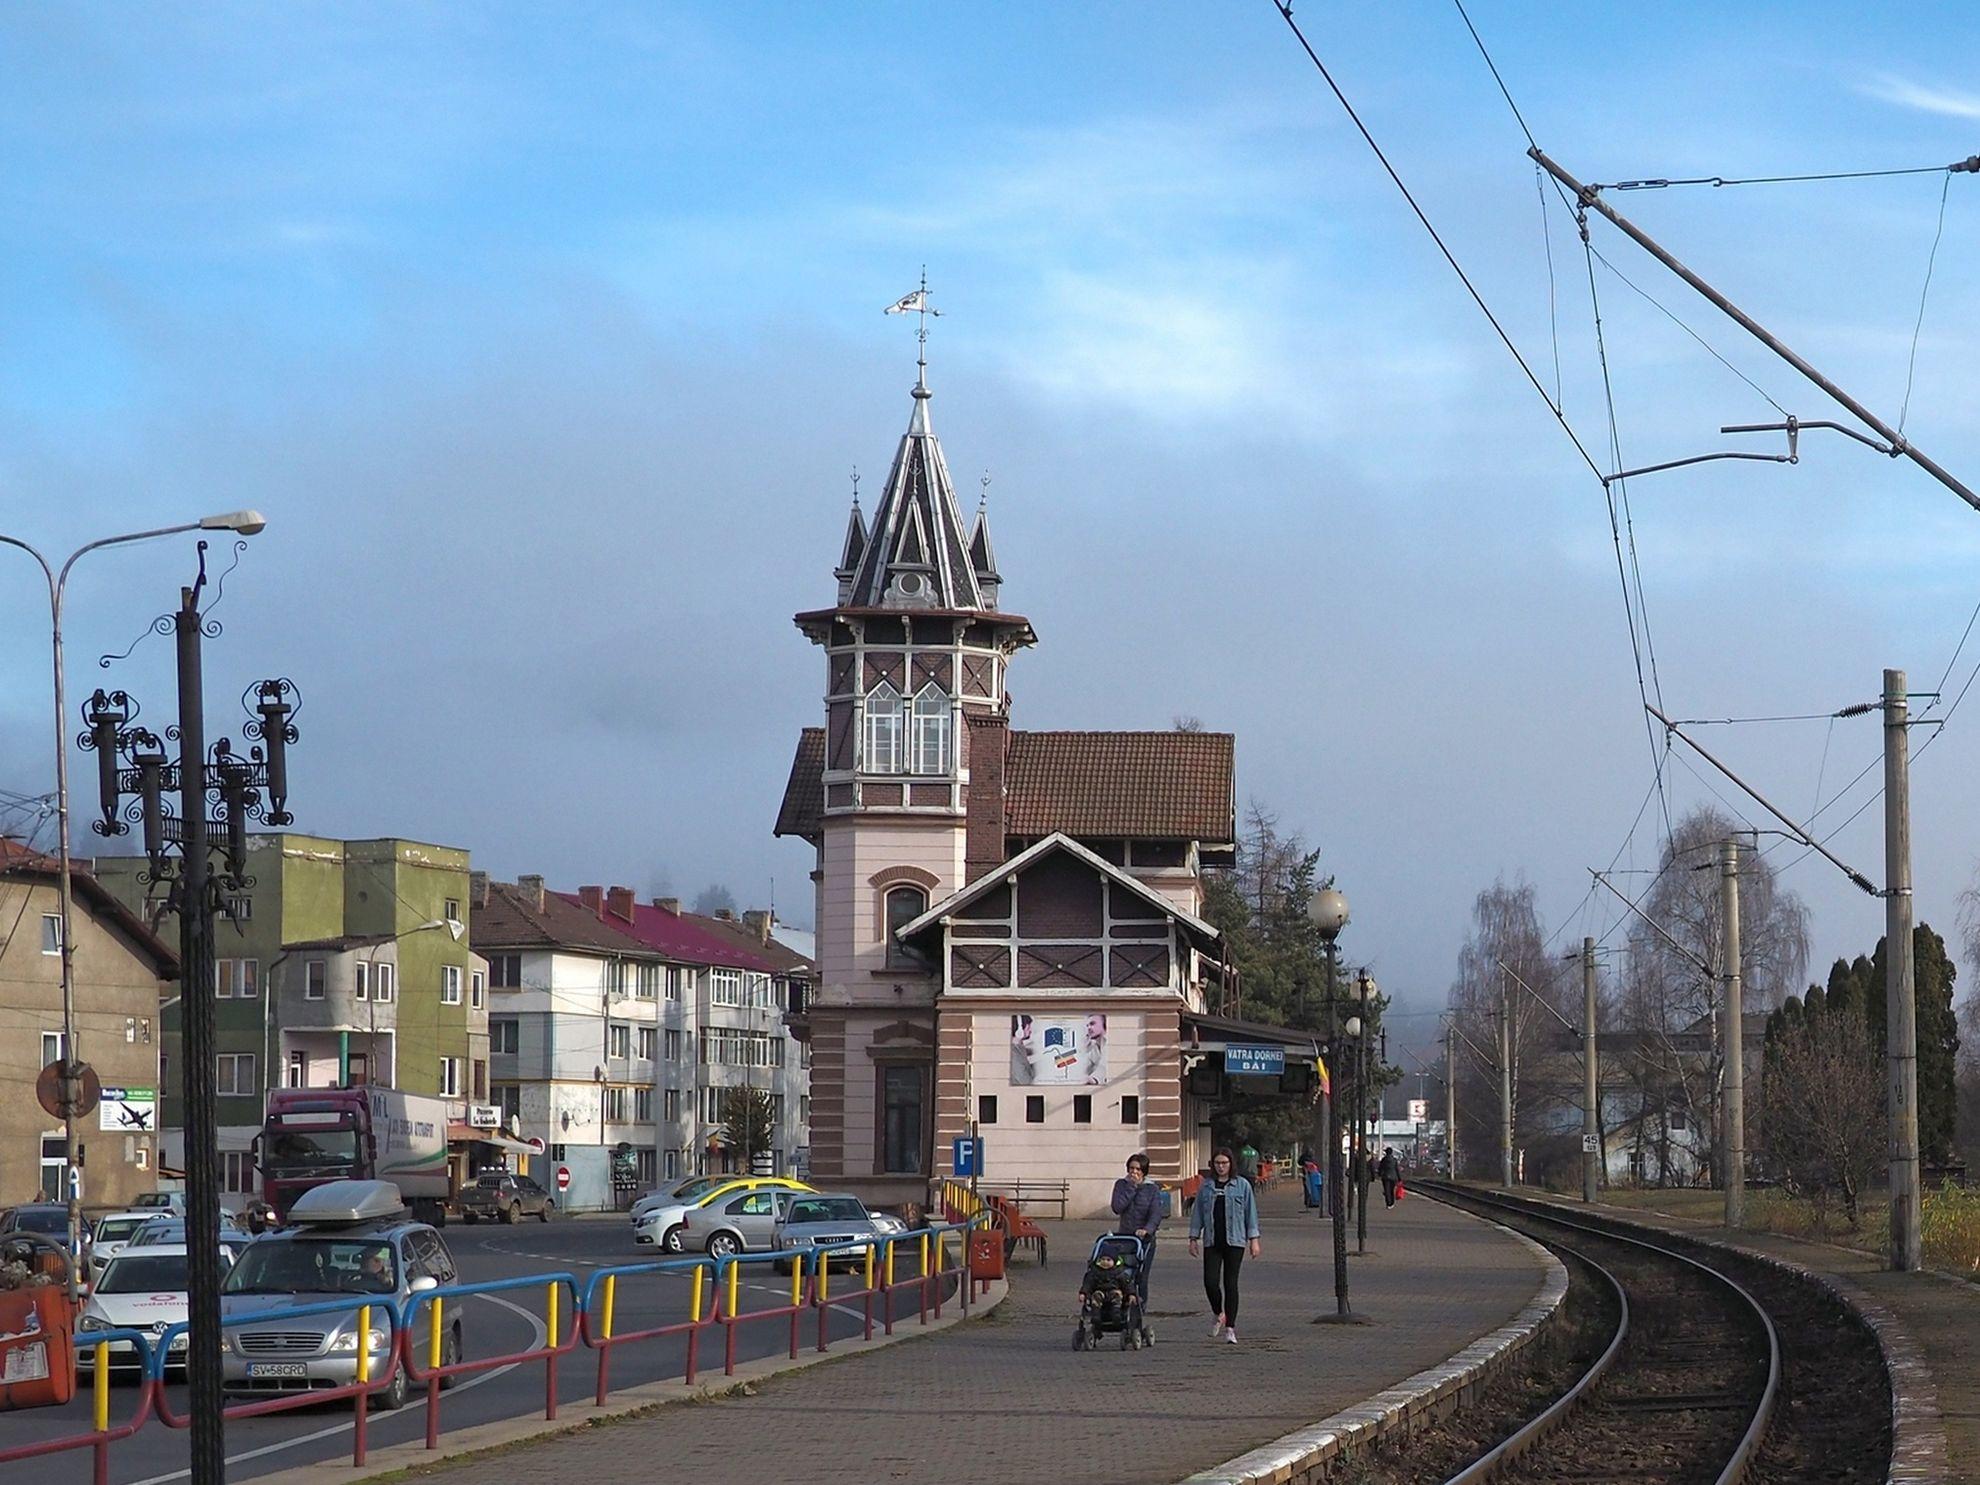 Gara Dorna Băi, azi renovată, așteaptă turiști care, cel puțin în ultima vreme, au cam pierdut trenul